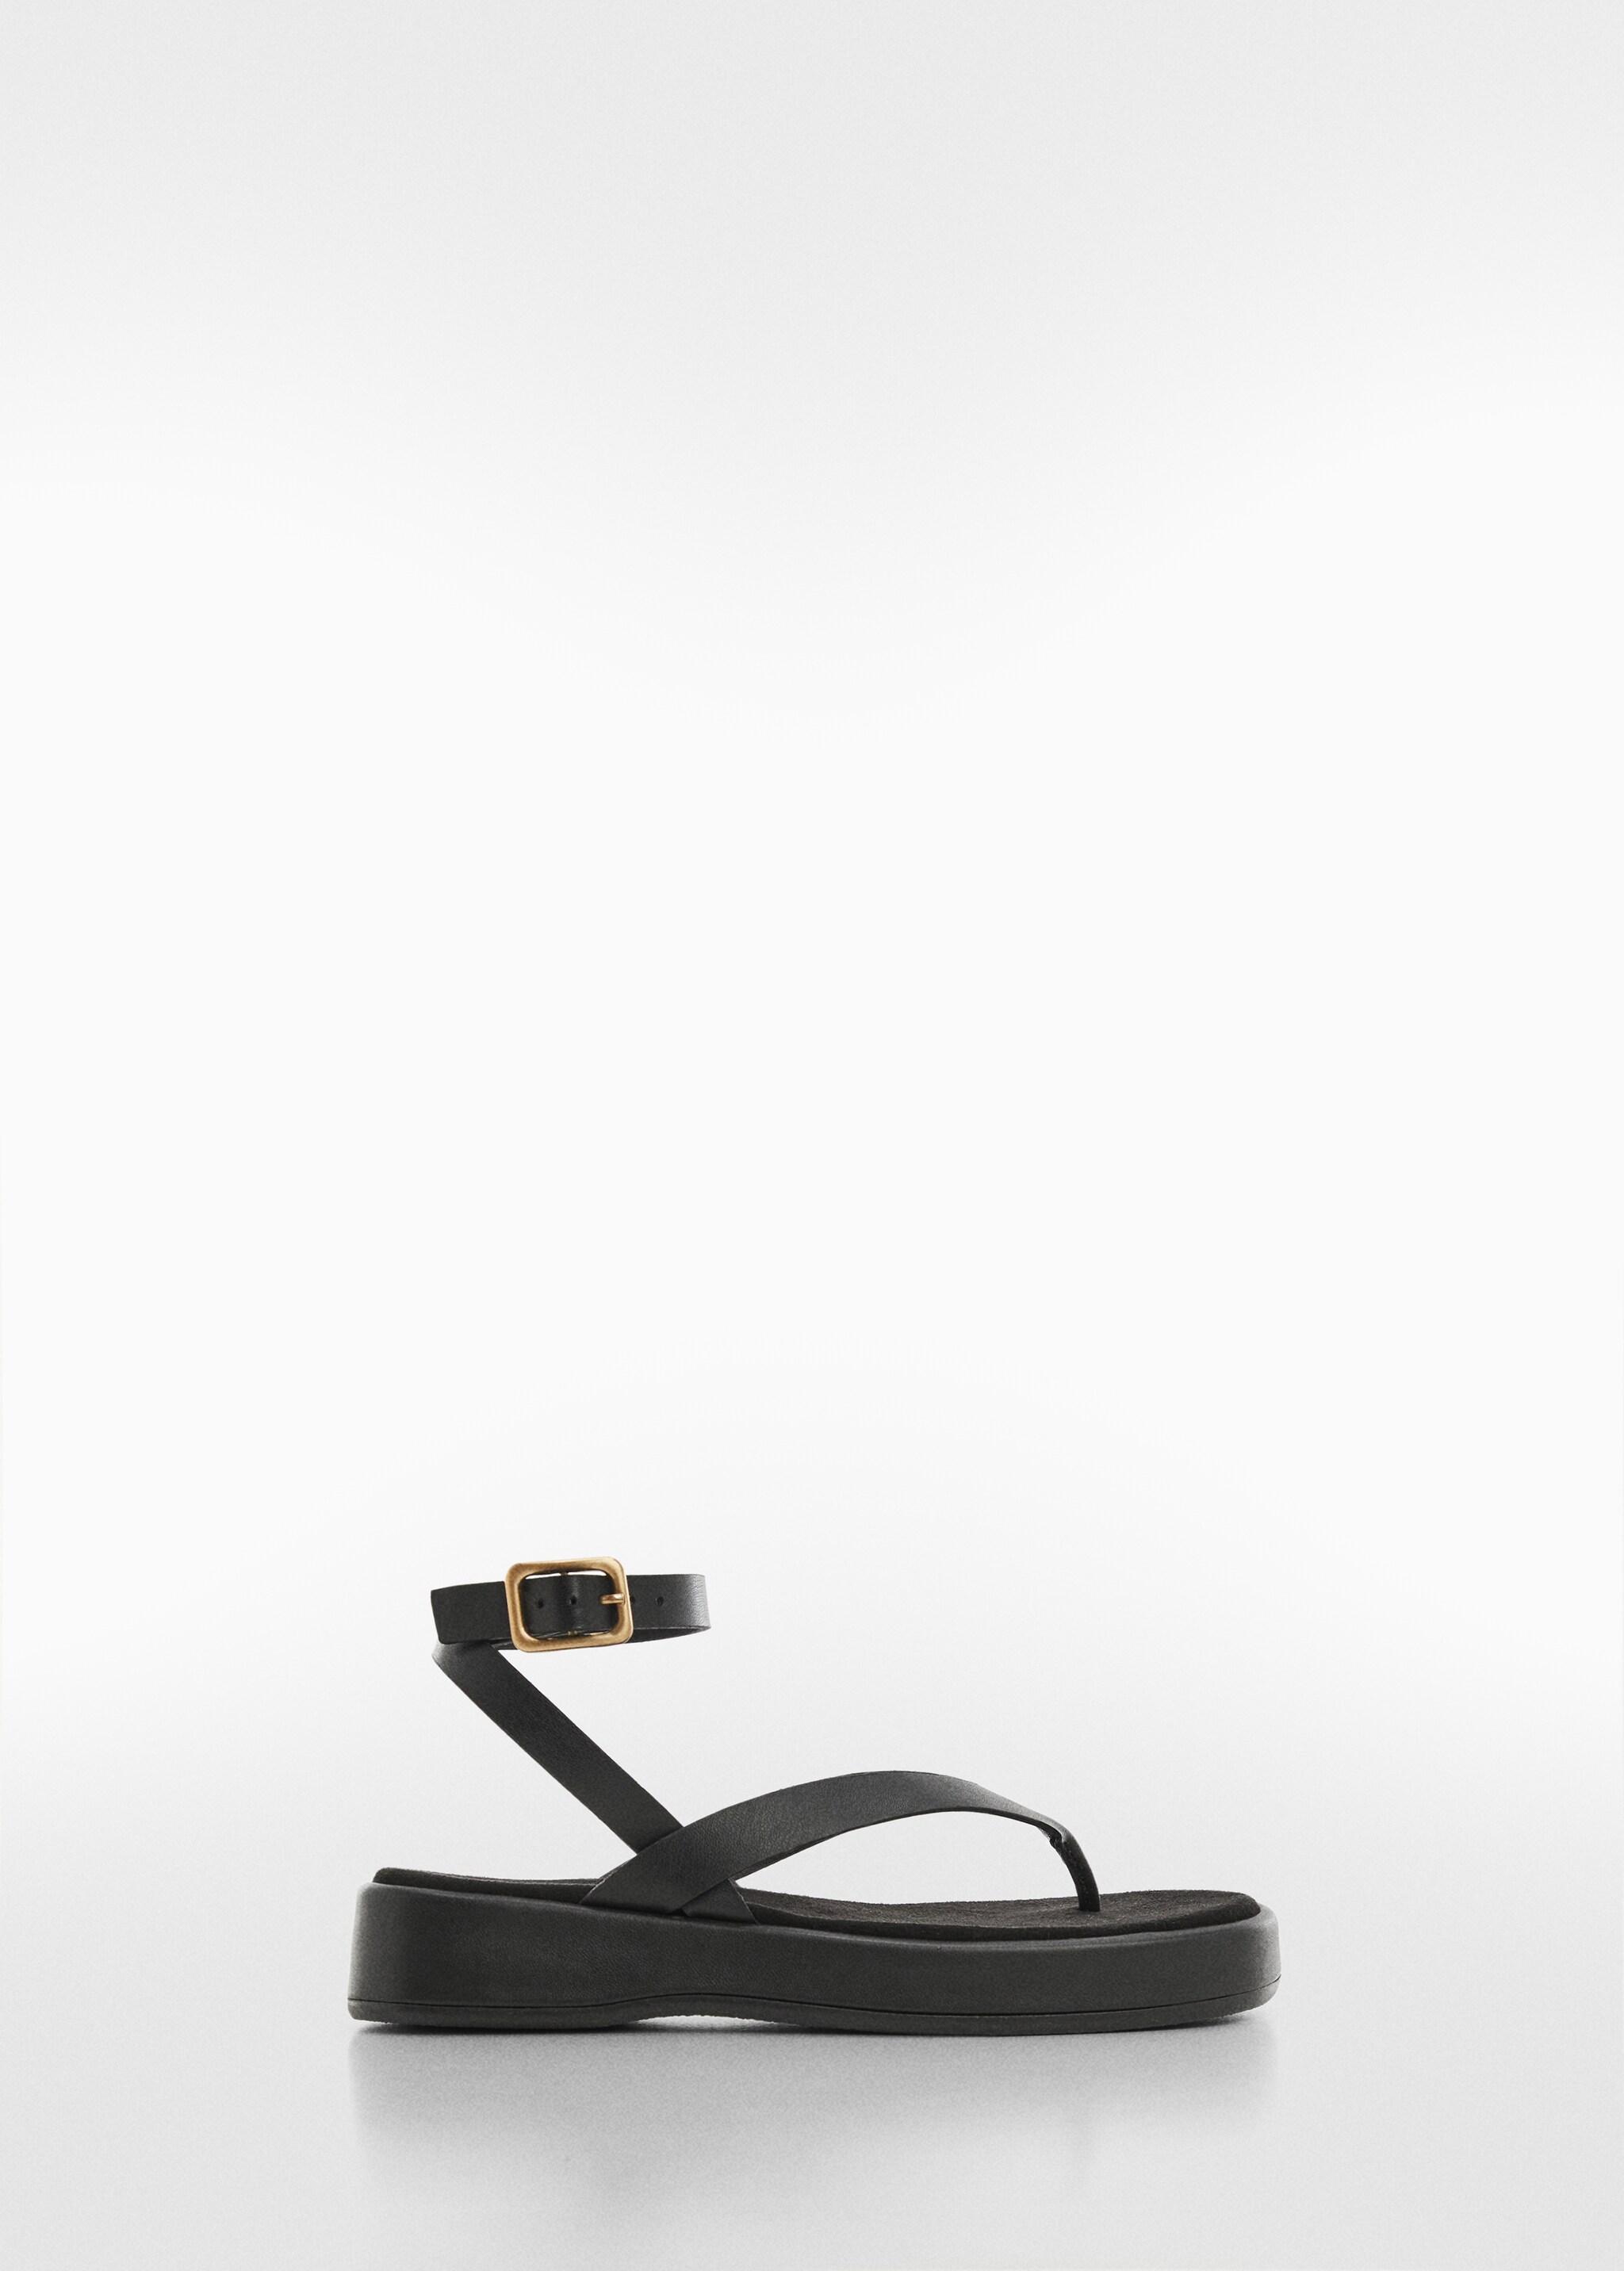 Platformlu bantlı sandalet - Modelsiz ürün